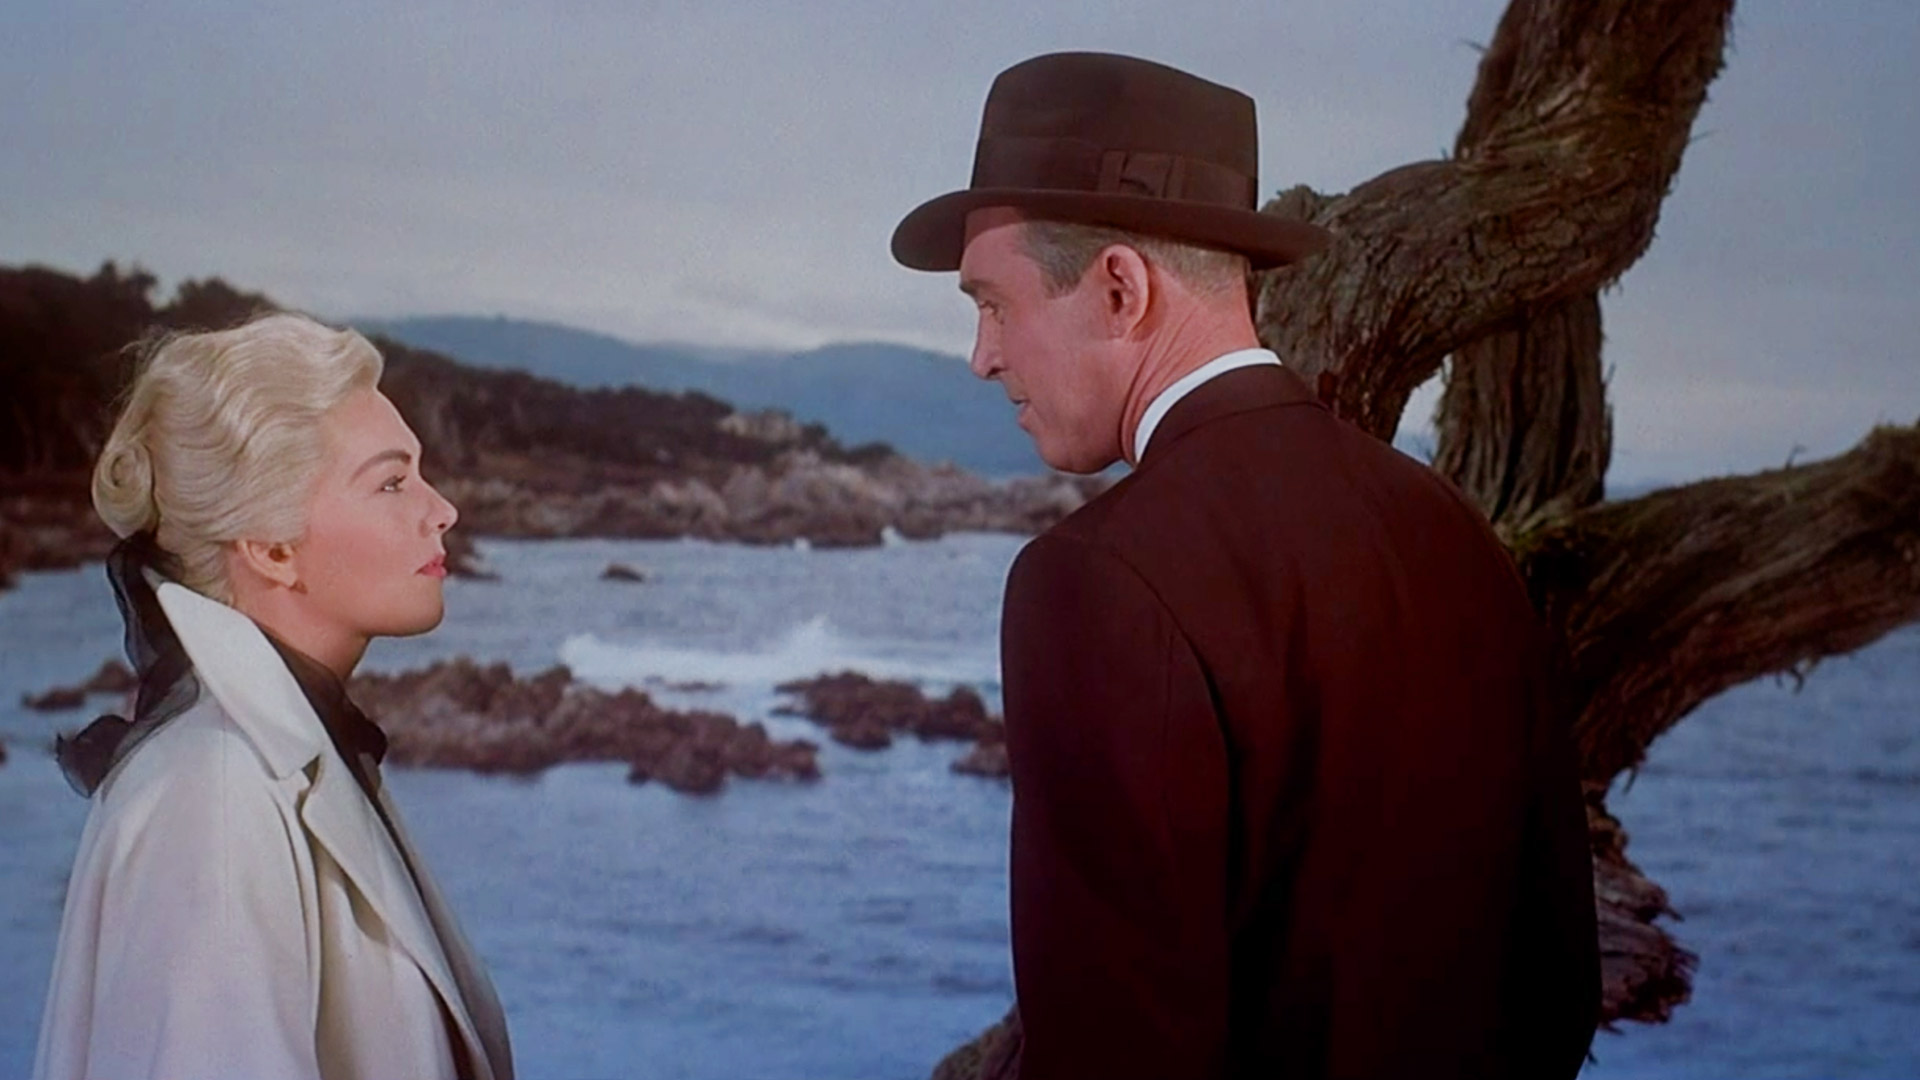 جیمز استوارت در کنار دریا در فیلم vertigo